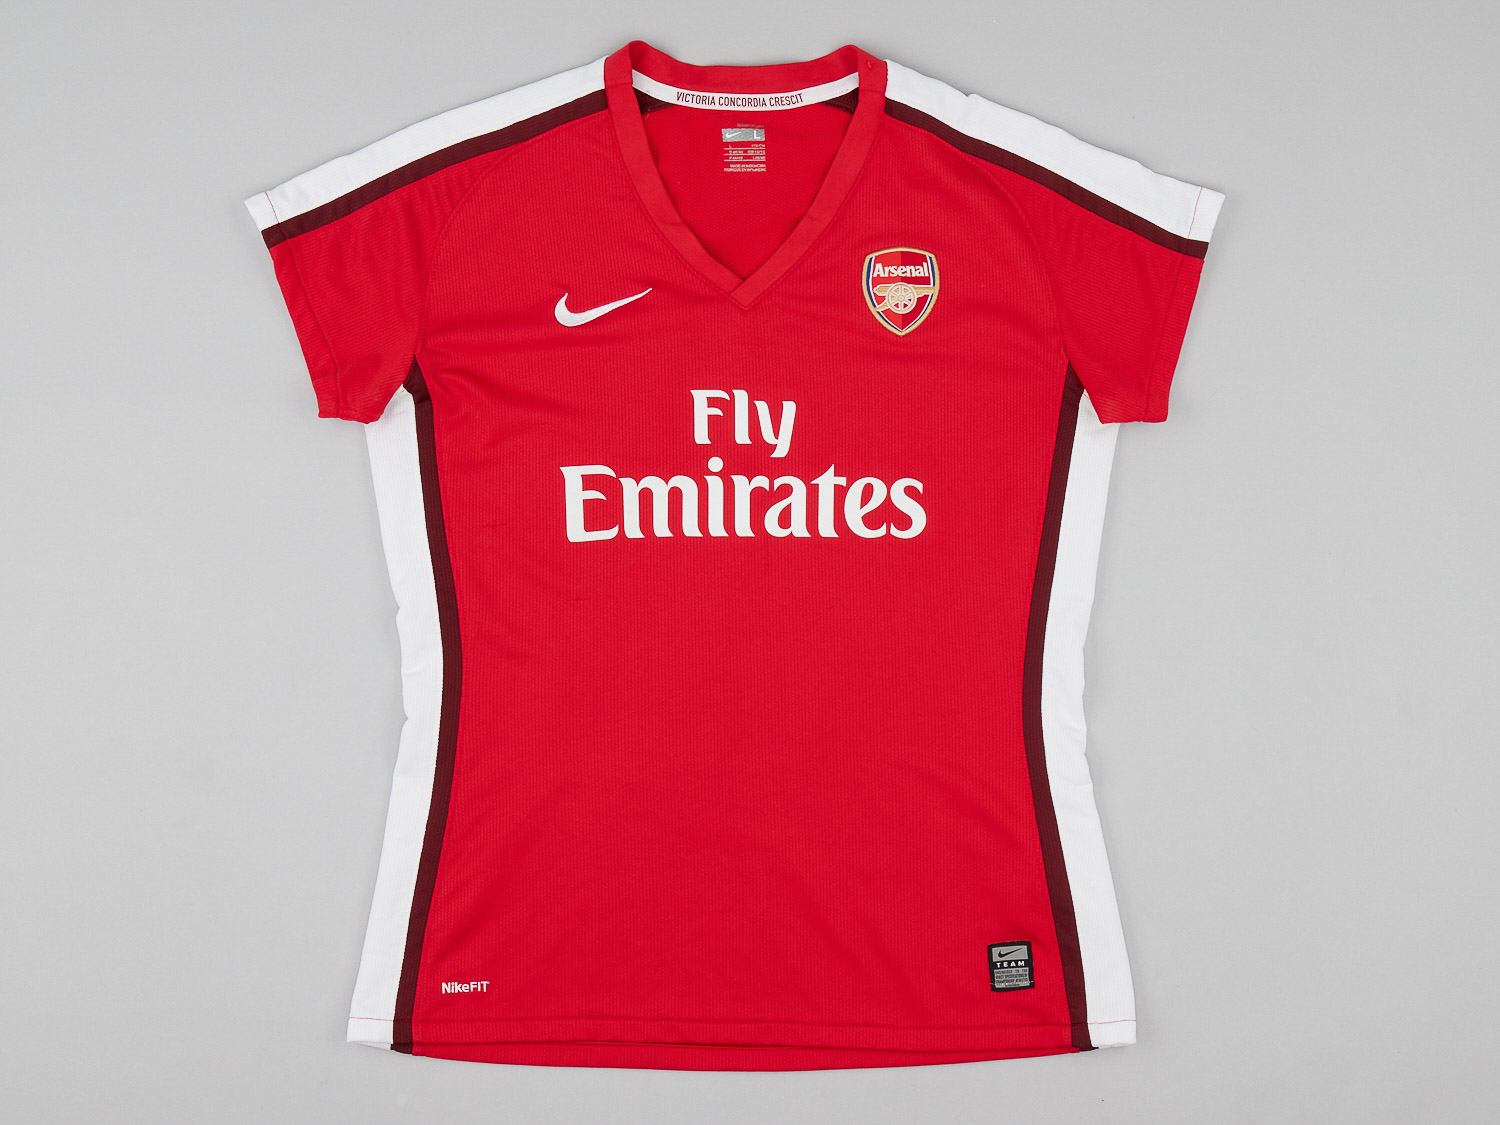 Arsenal  home shirt (Original)